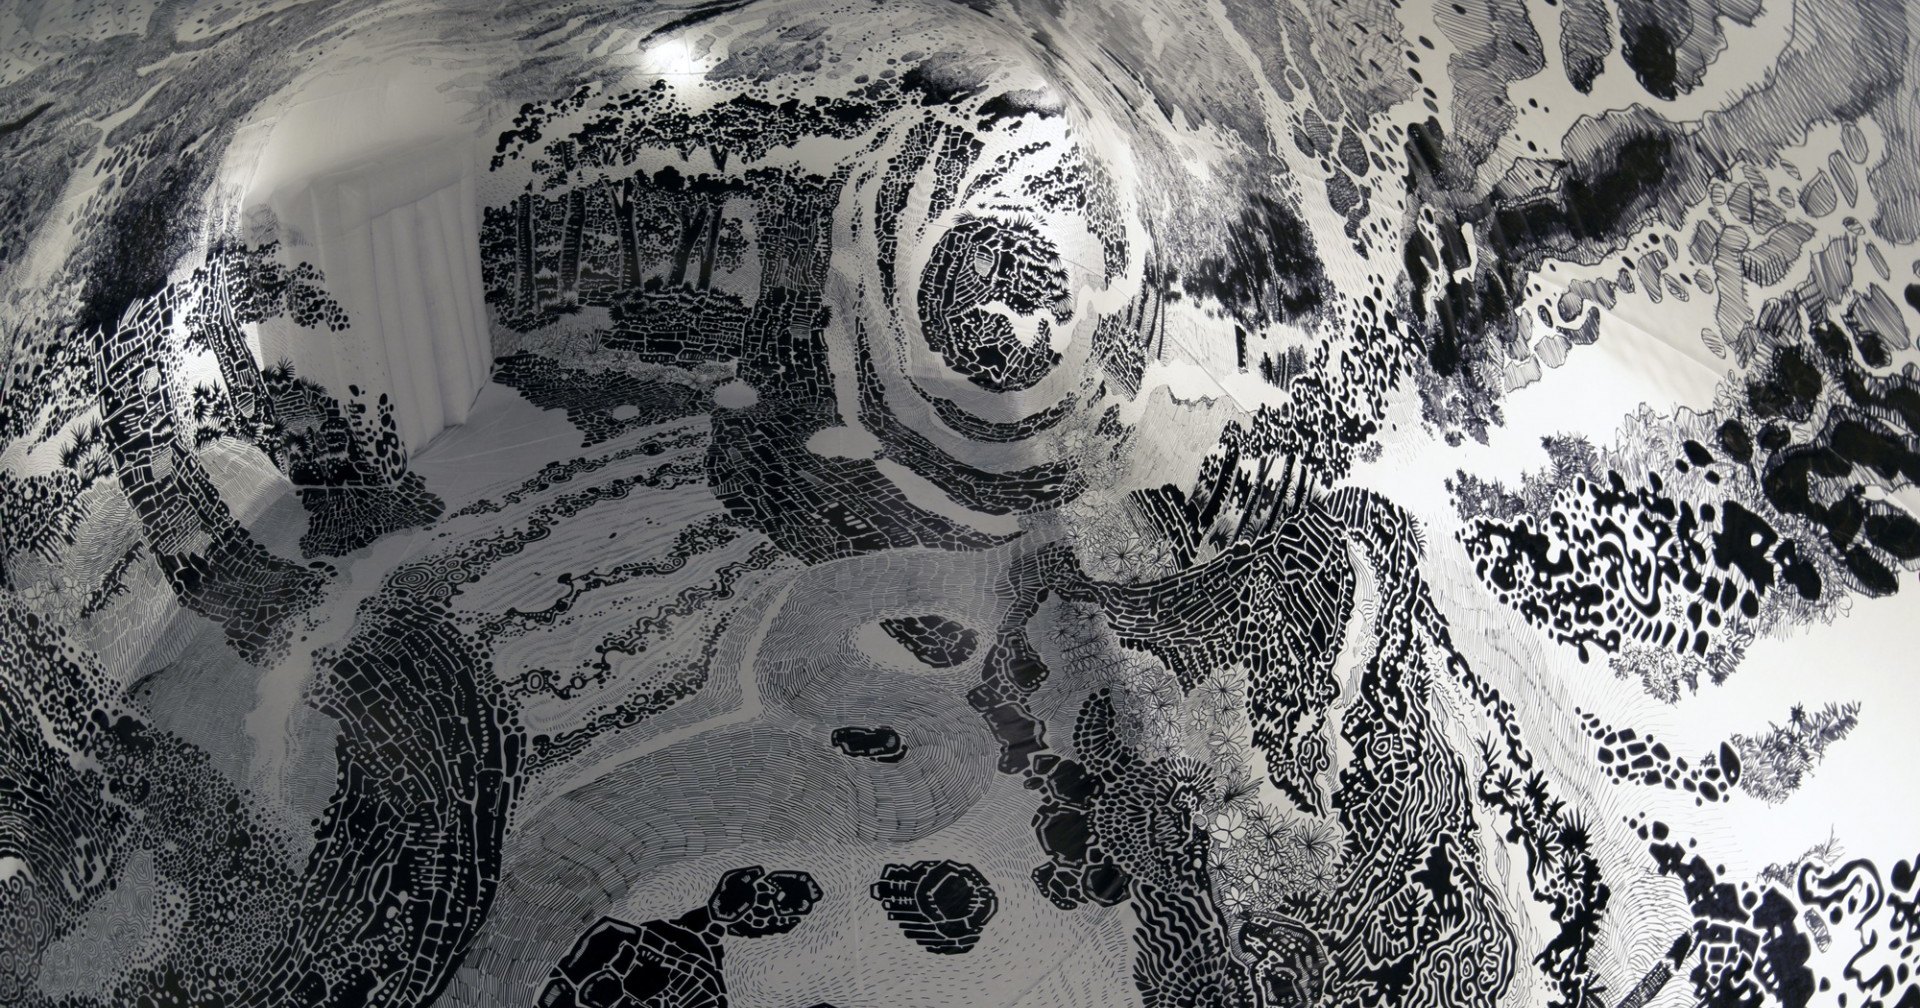 Художник создал объемную панораму внутри огромного надувного шара